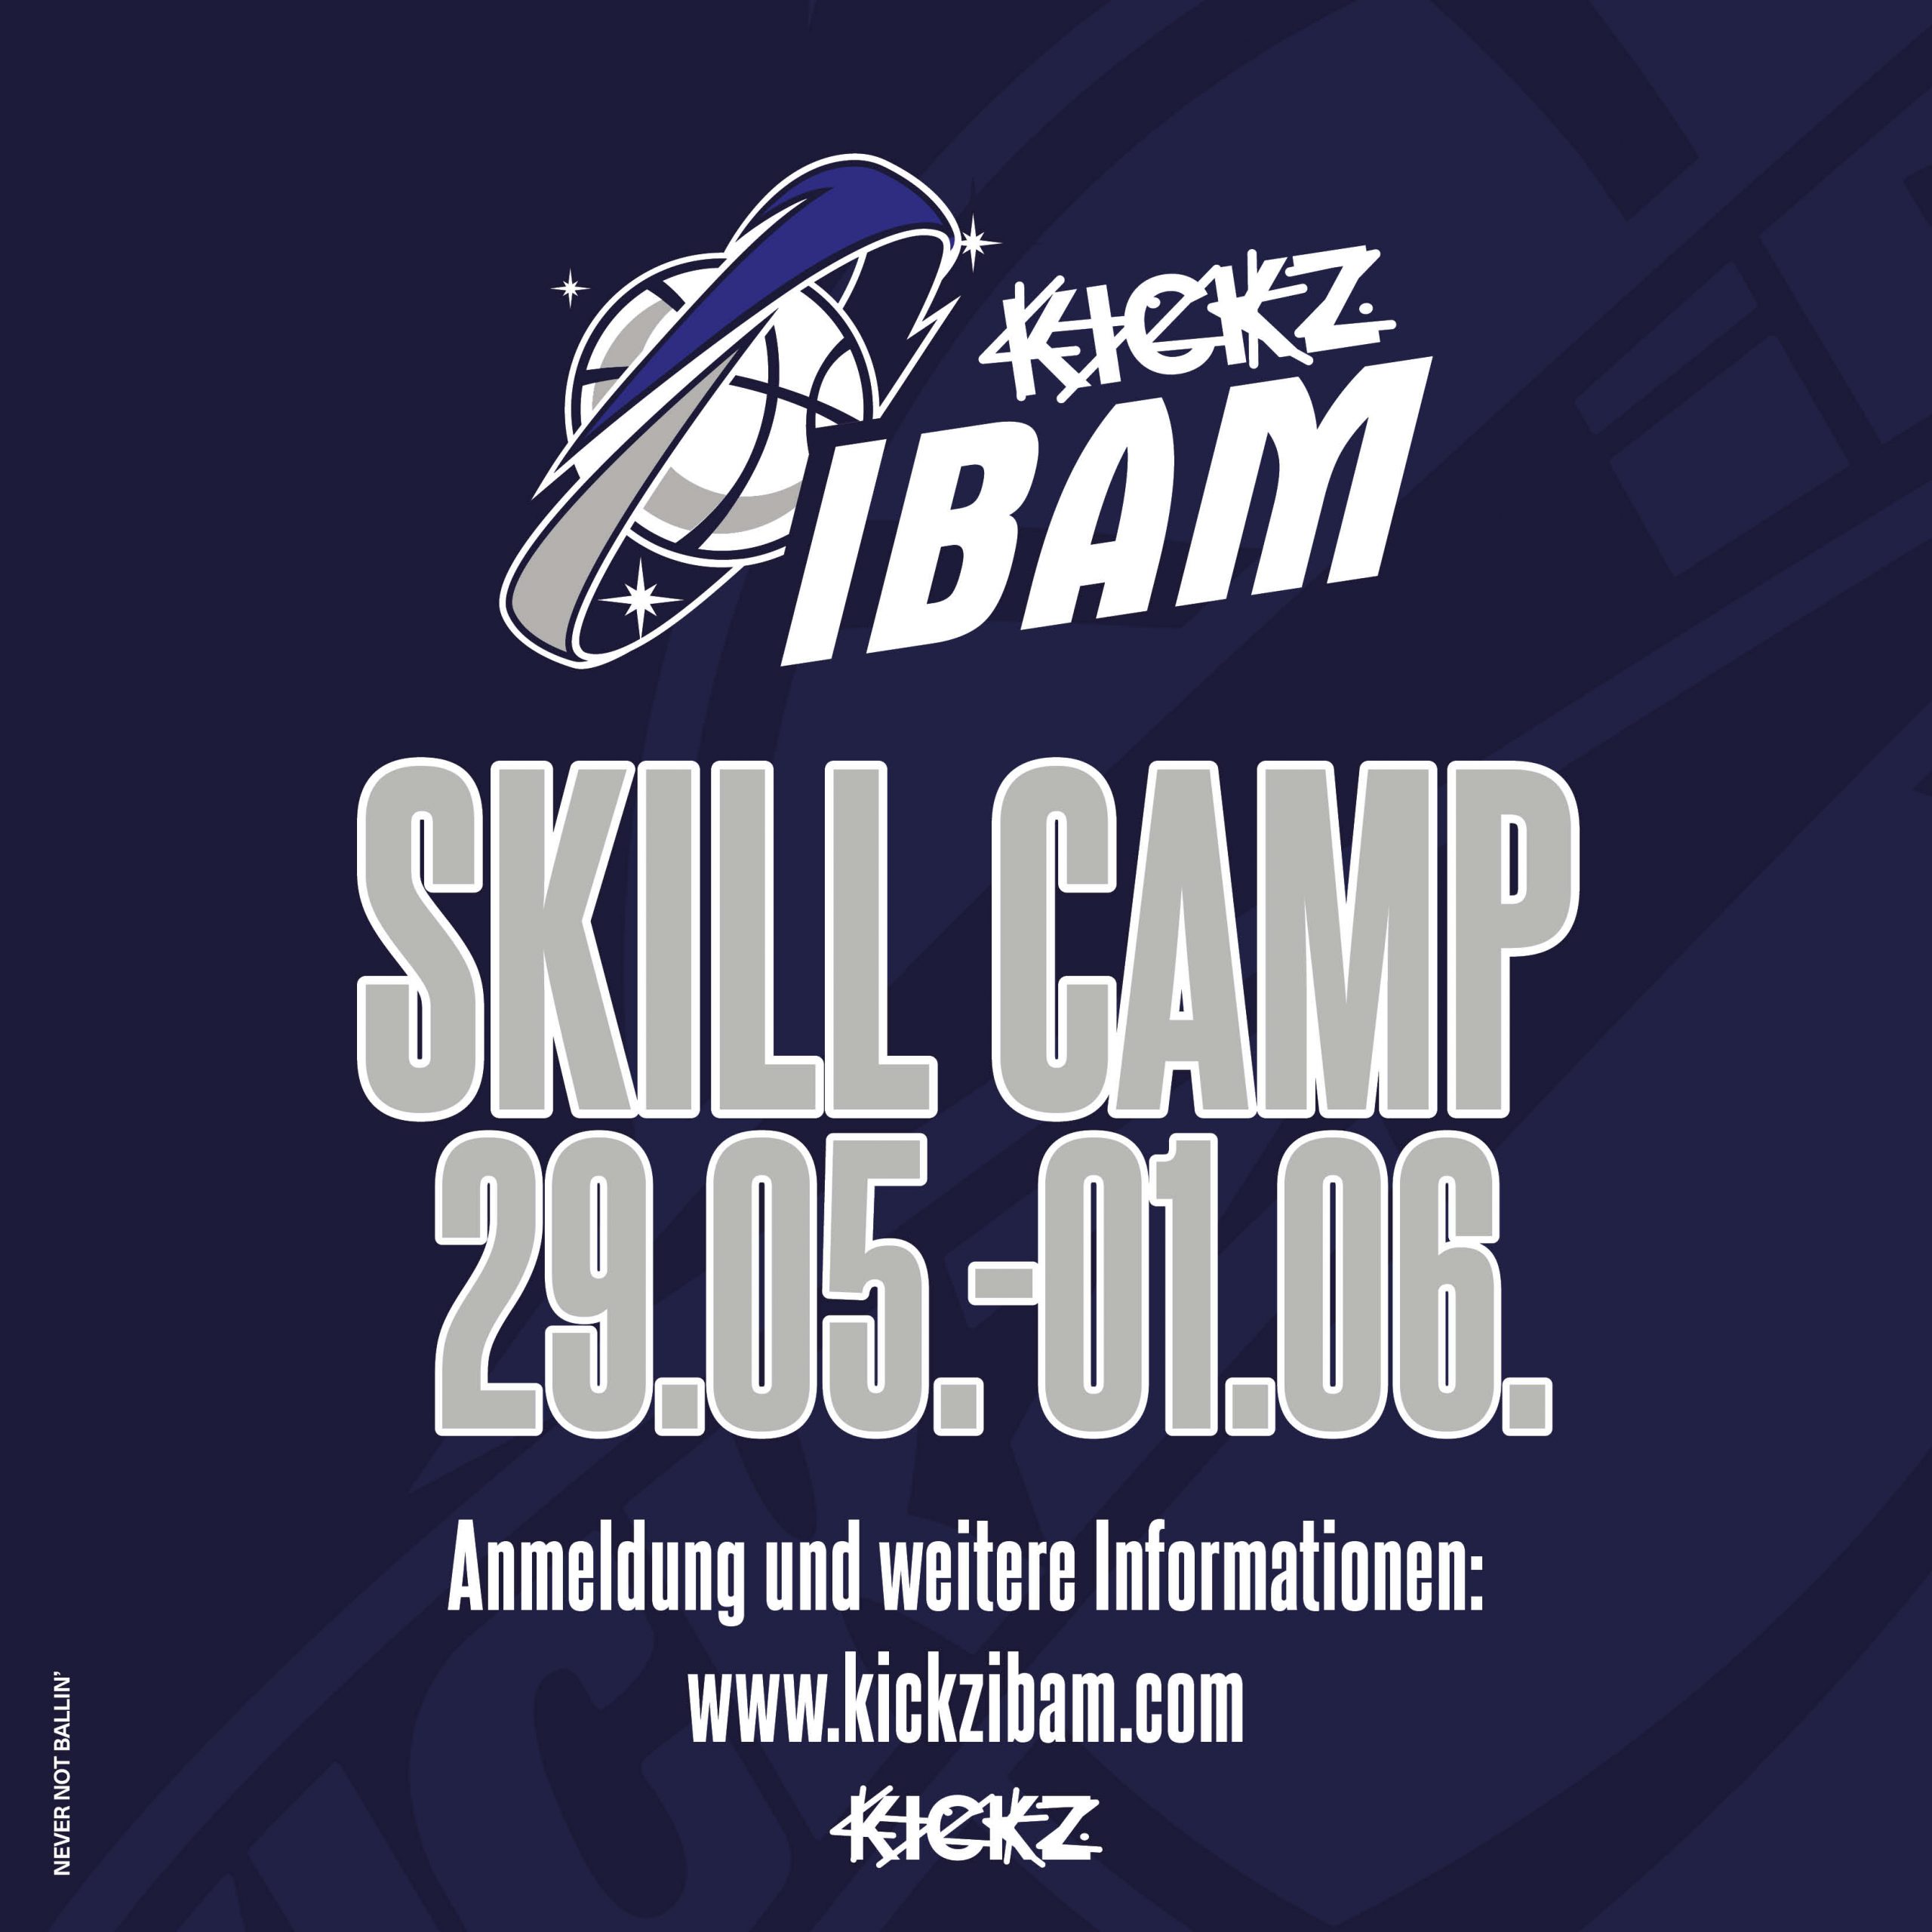 KICKZ IBAM Skill Camp 29.05 - 01.06. Anmeldung und weitere Informationen: www.kickzibam.com